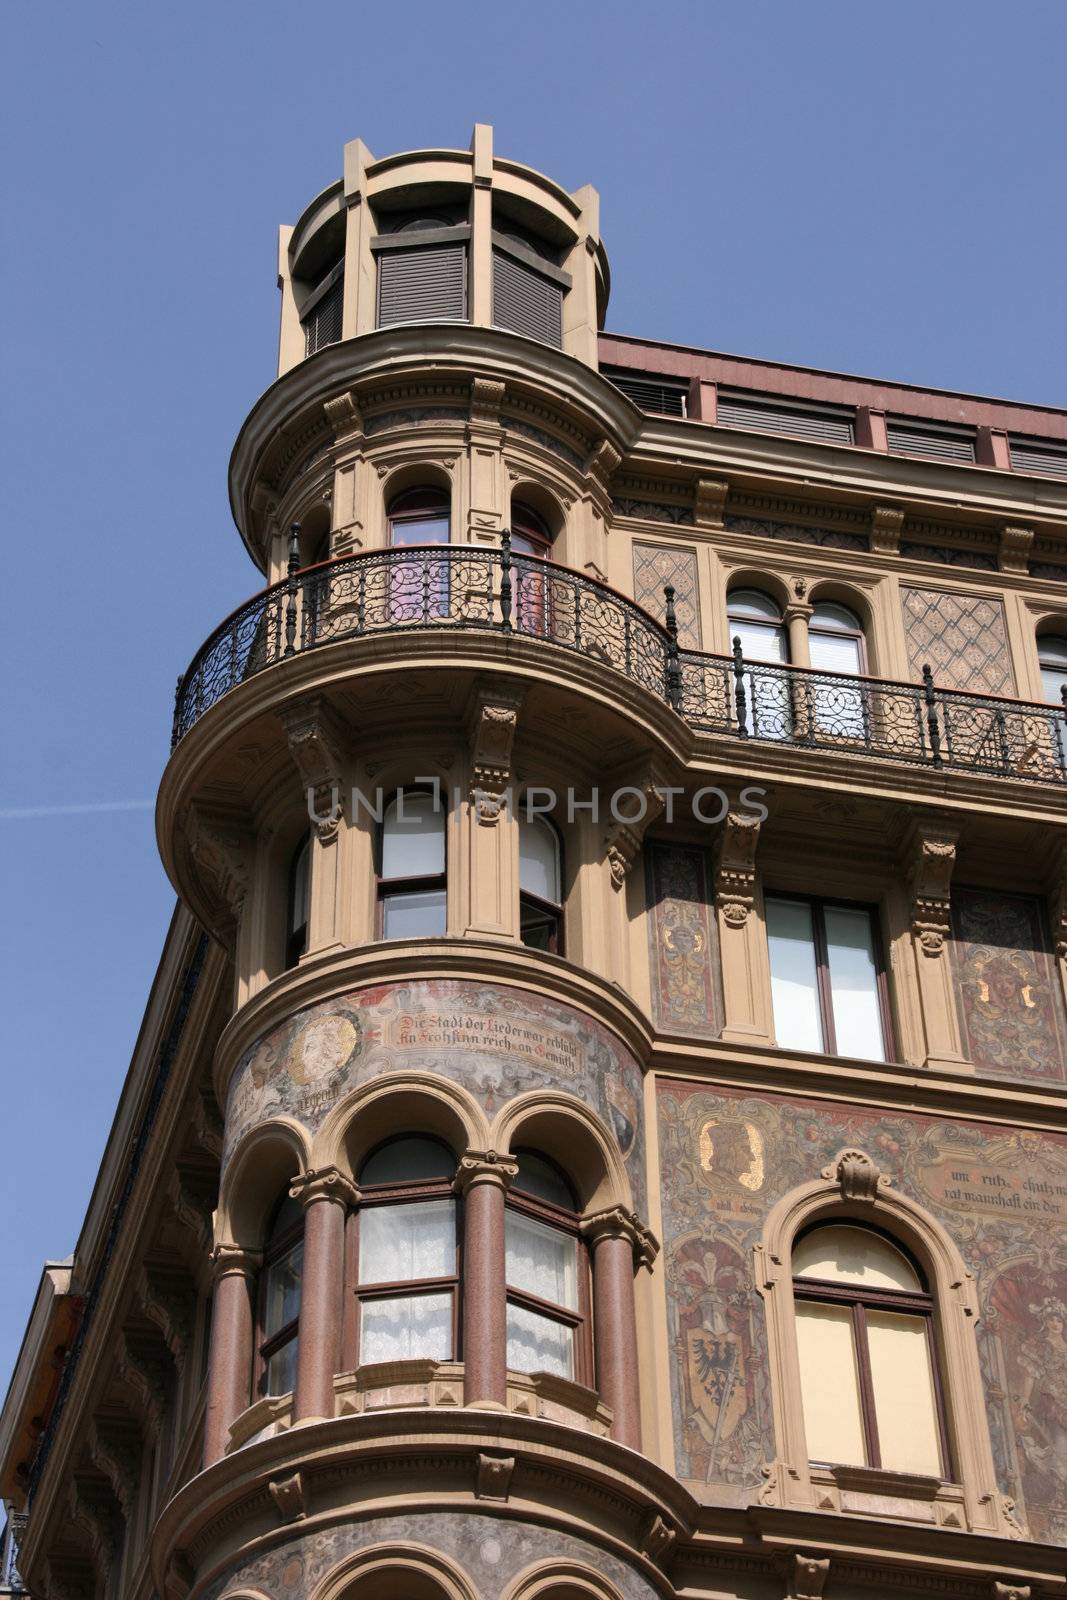 Rounded rotund in a building next to Stephansplatz in Vienna, Austria